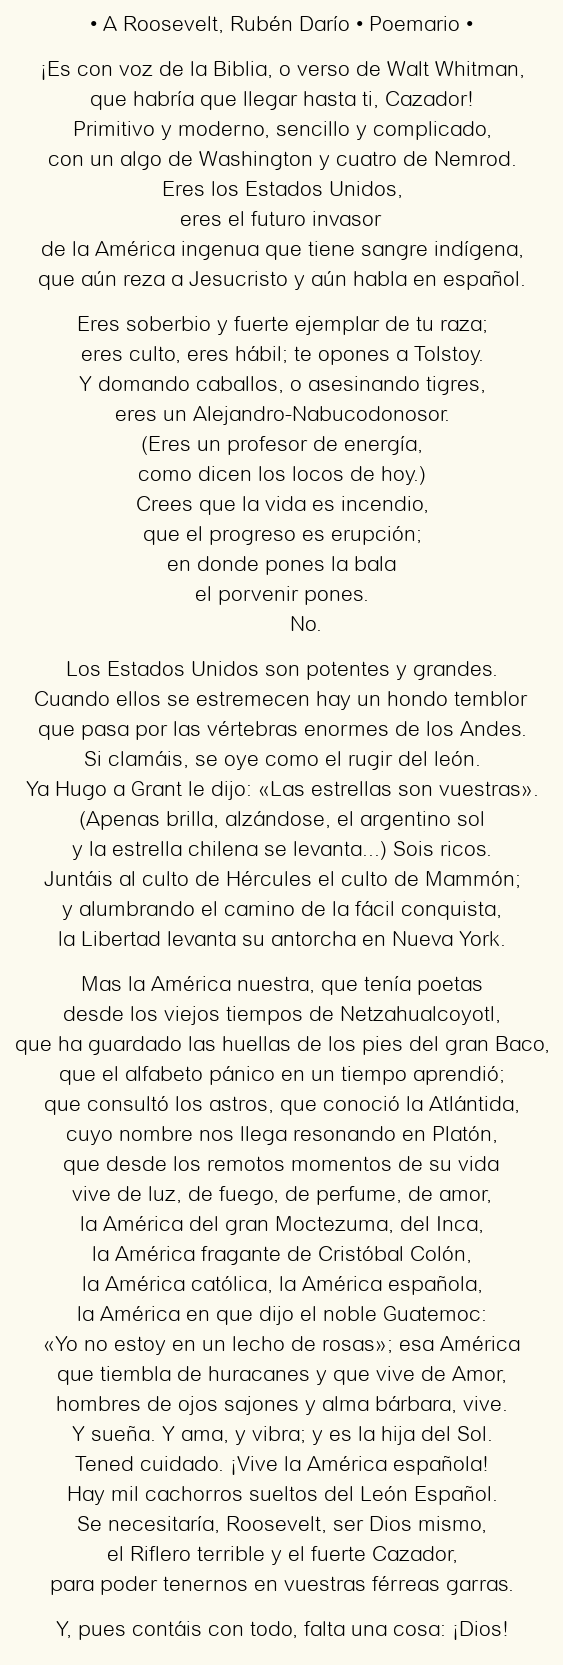 Imagen con el poema A Roosevelt, por Rubén Darío